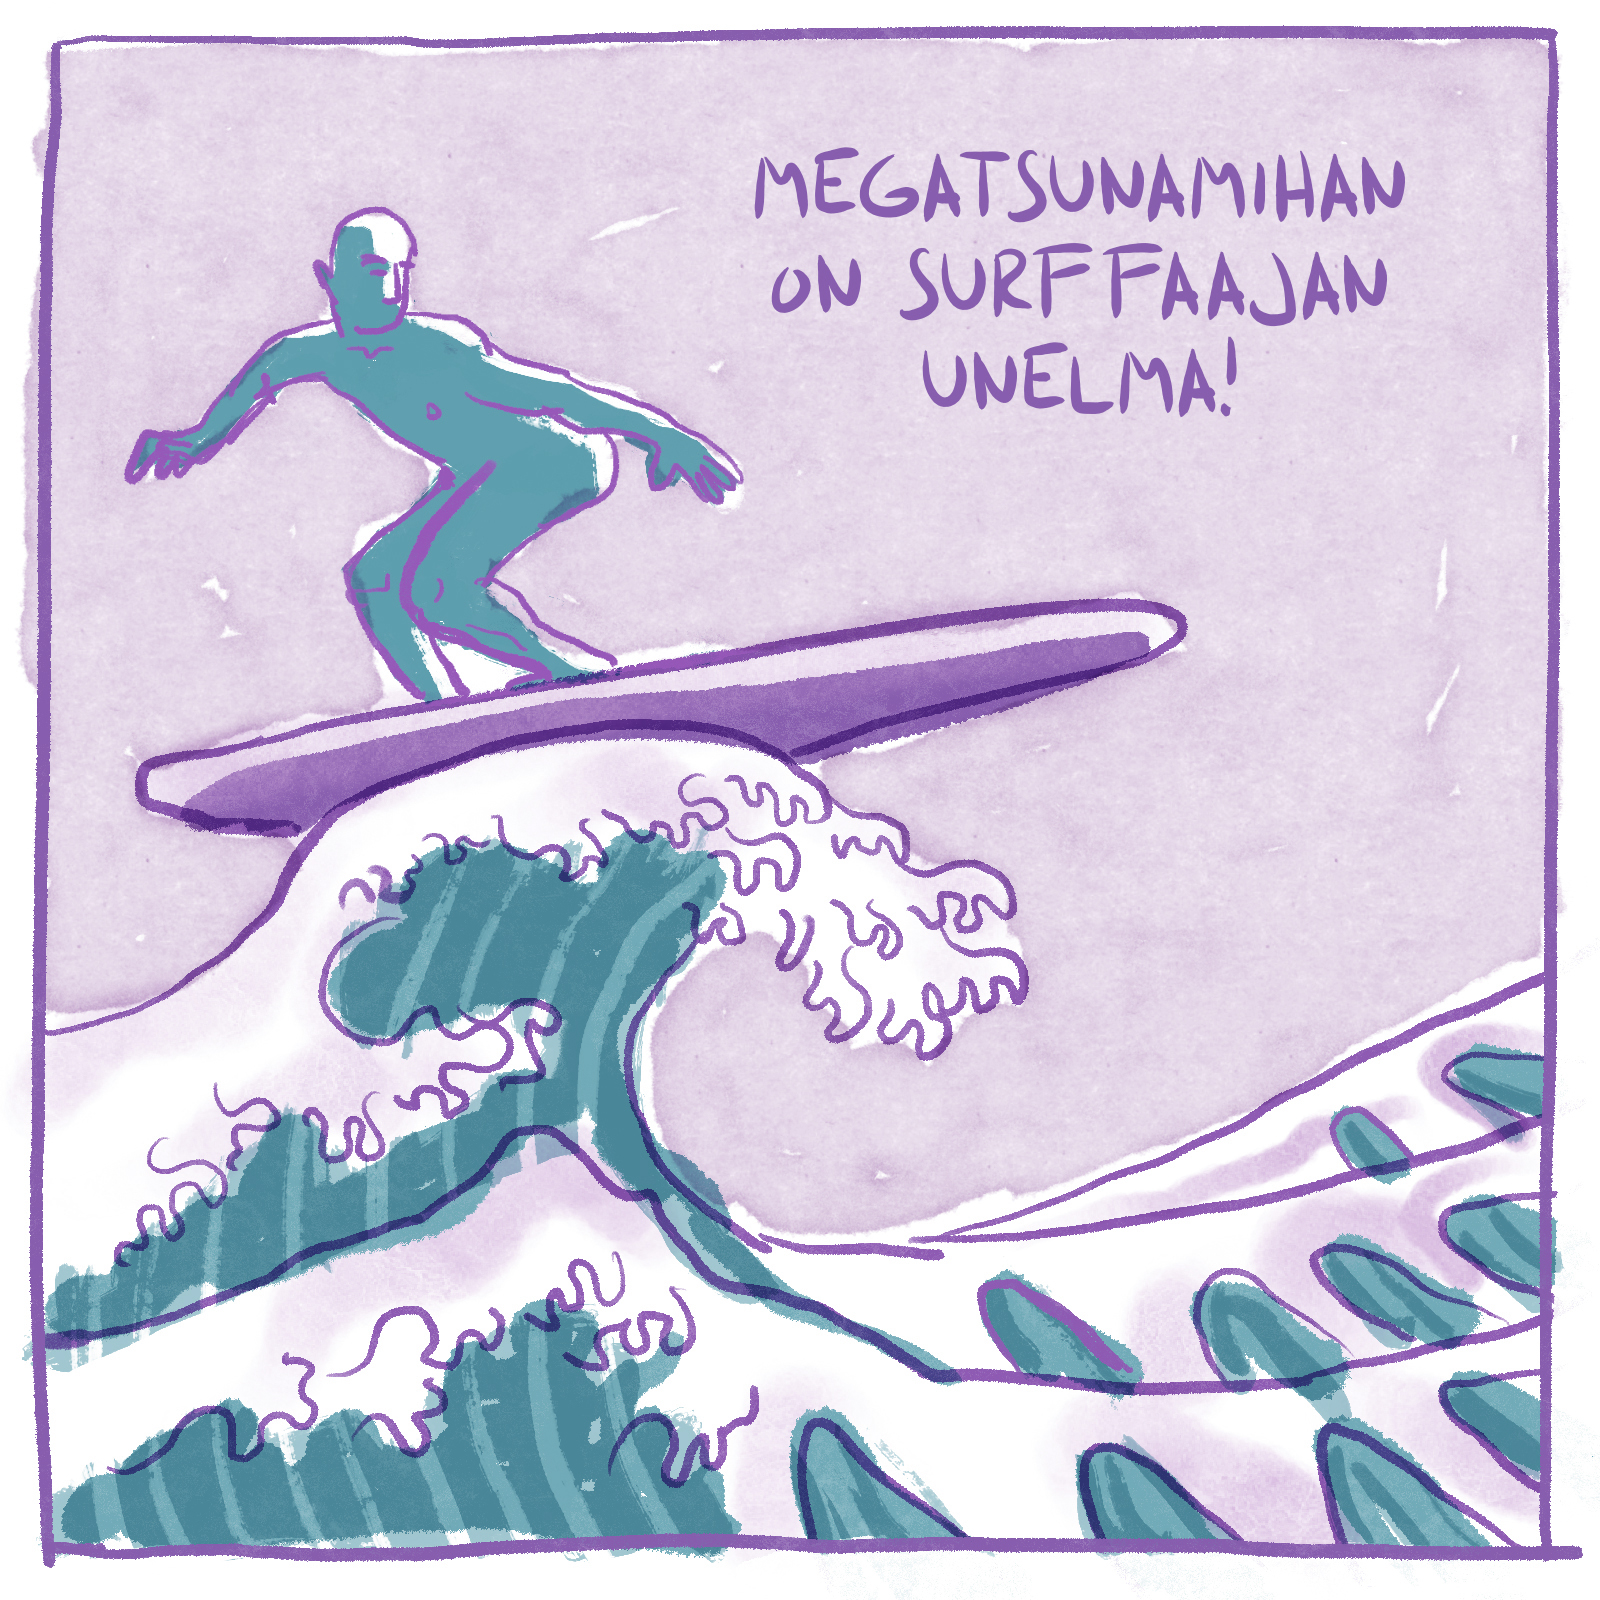 Hahmo surffaa aallon harjalla. Tekstissä lukee: "Megatsunamihan on surffaajan unelma!"